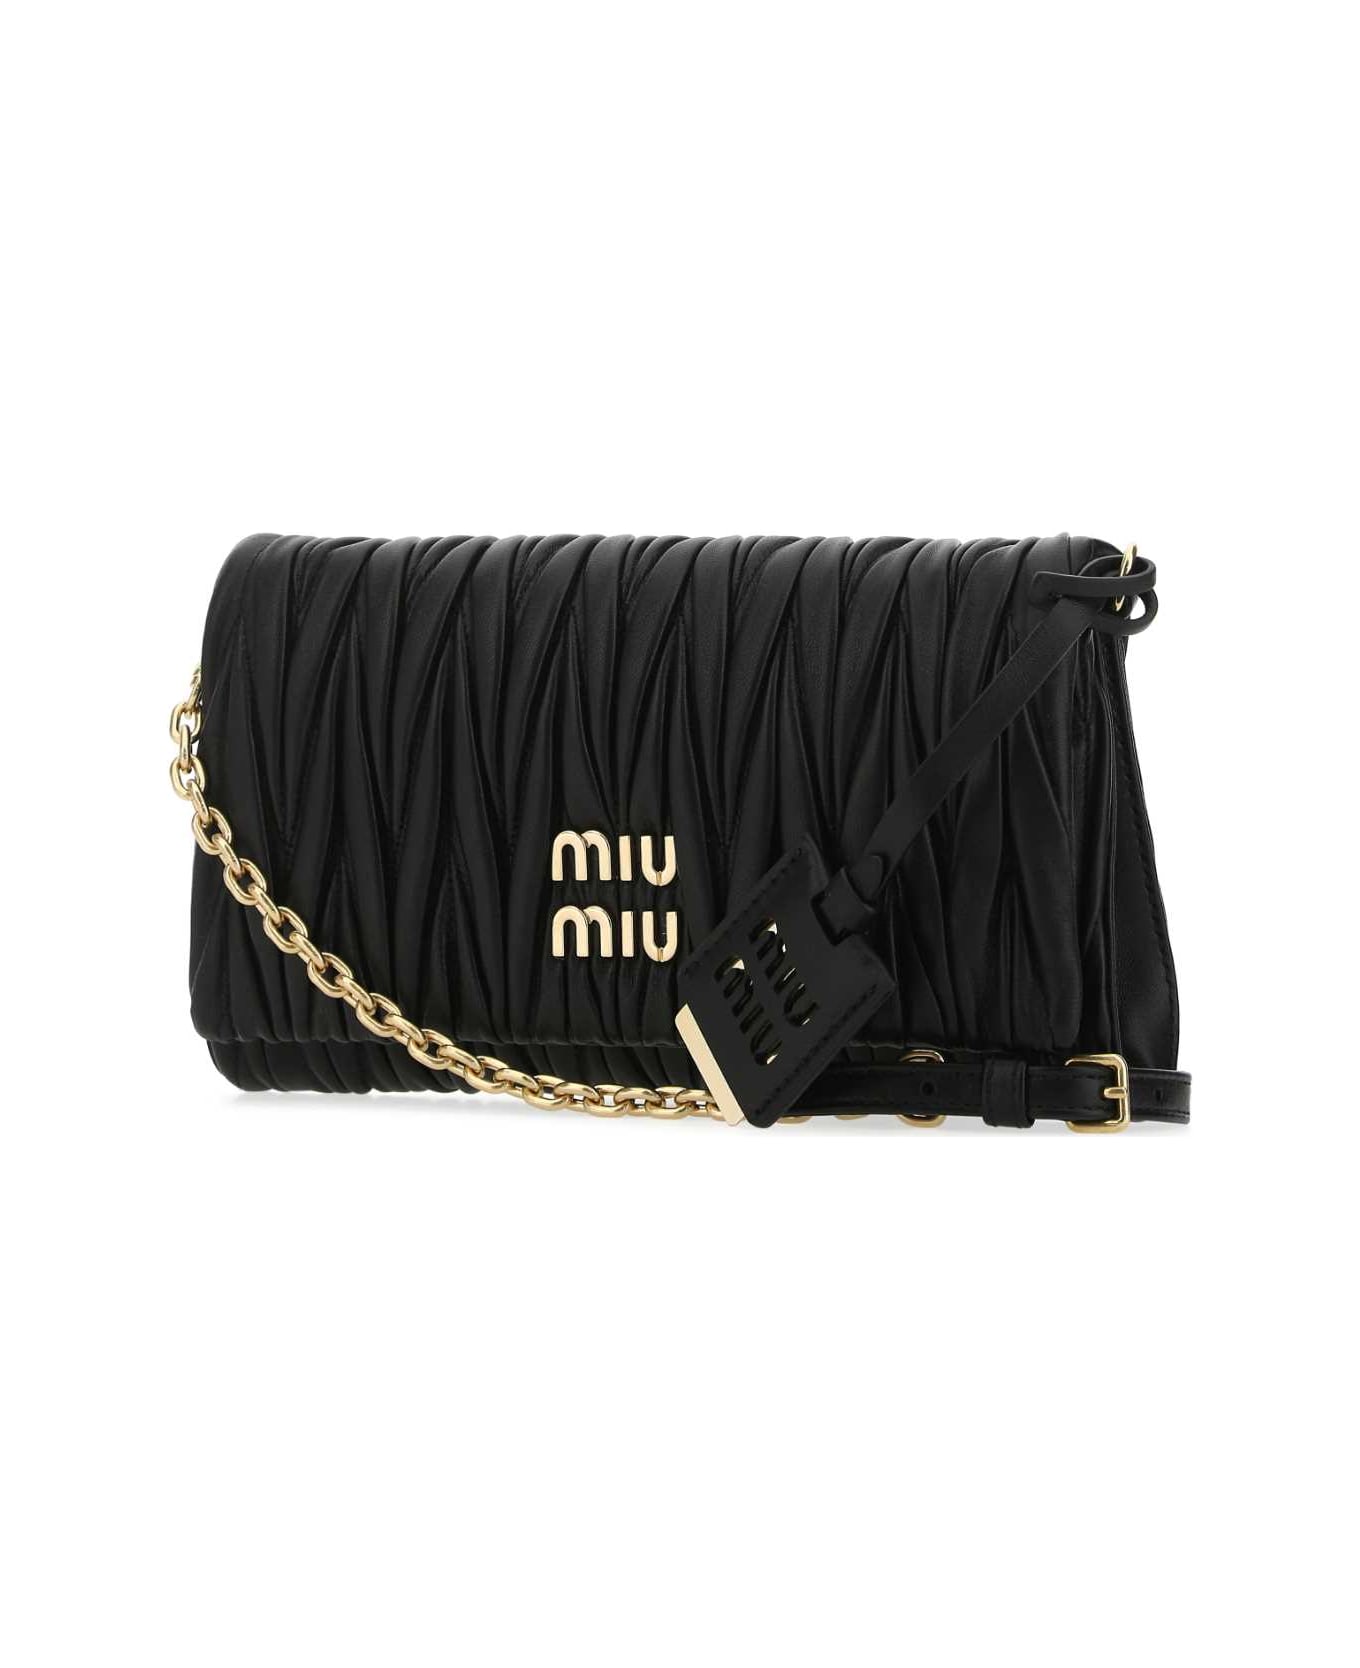 Miu Miu Black Nappa Leather Clutch - F0002 ショルダーバッグ